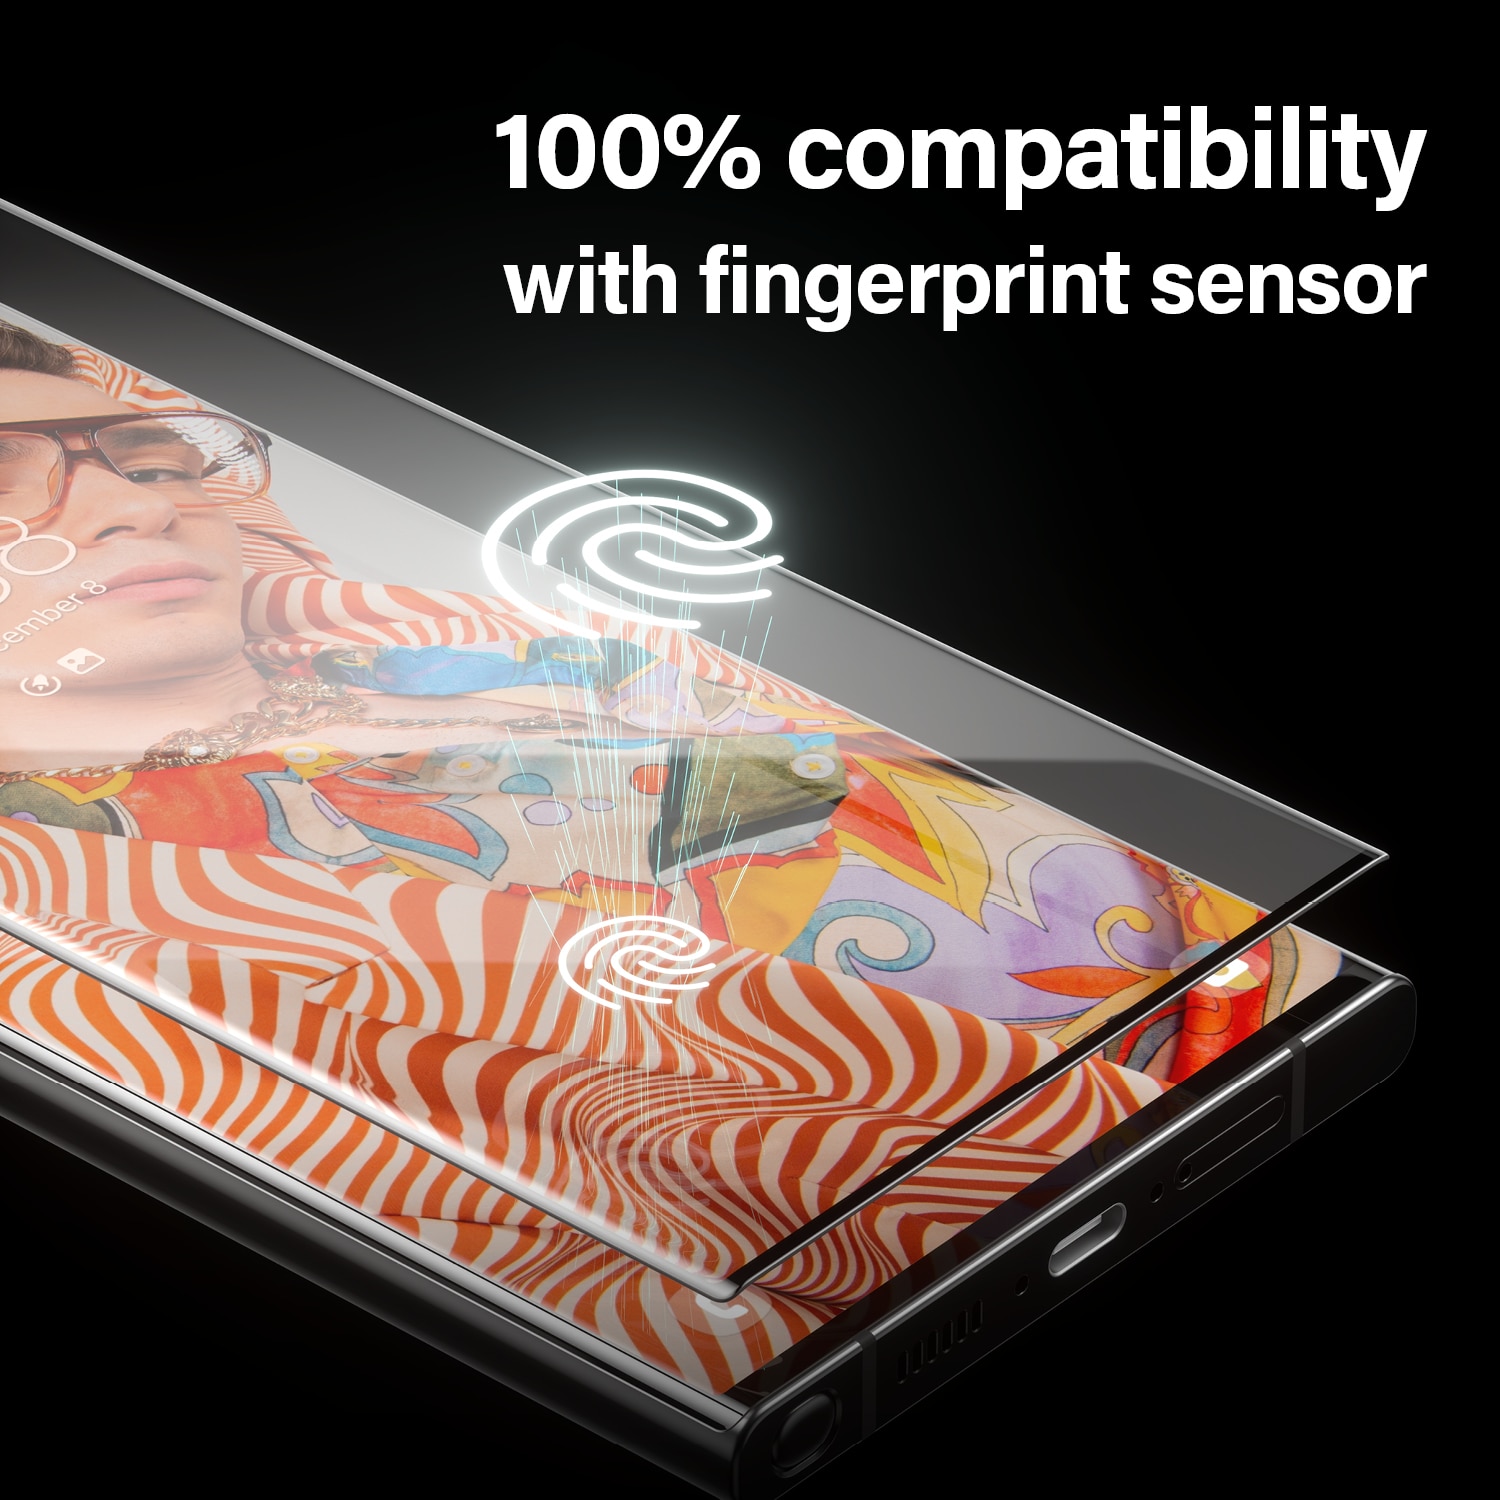 Samsung Galaxy S23 Ultra Skärmskydd i hybridglas med installationsverktyg - Ultra Wide Fit